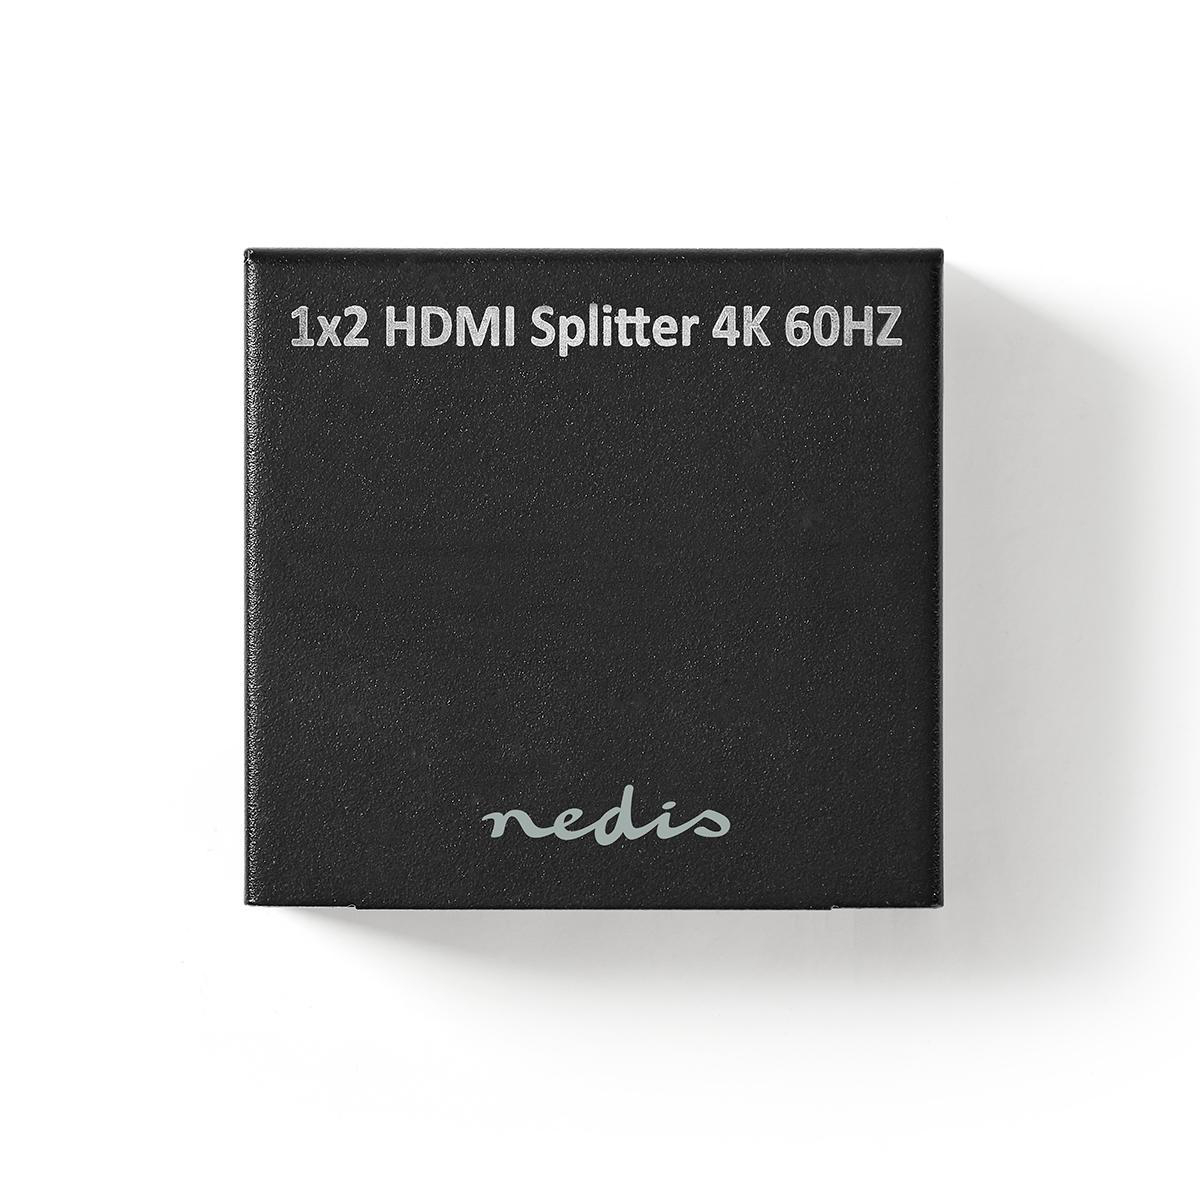 HDMI Splitter  4k 60HZ 1 > 2